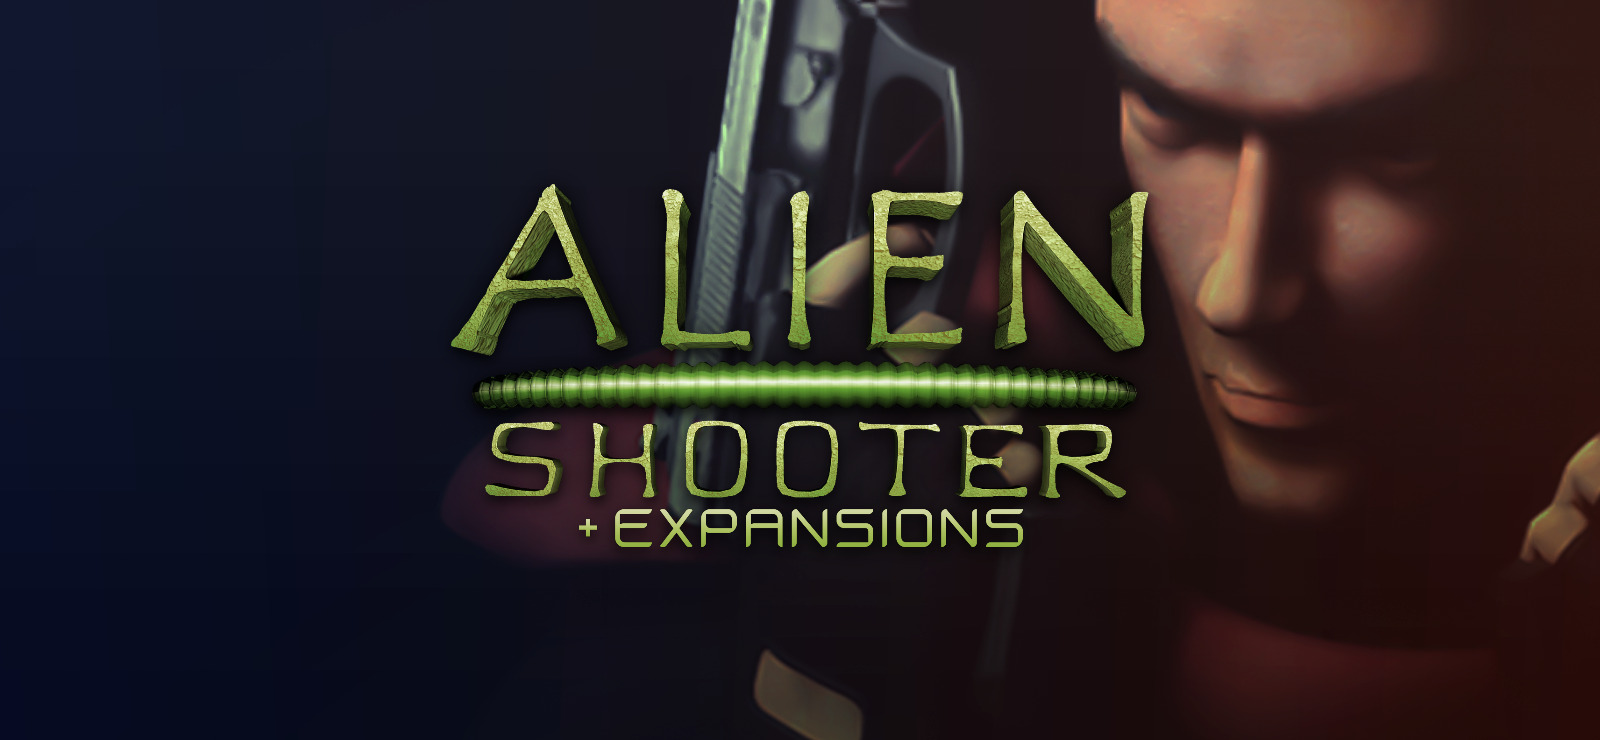 online alien shooter